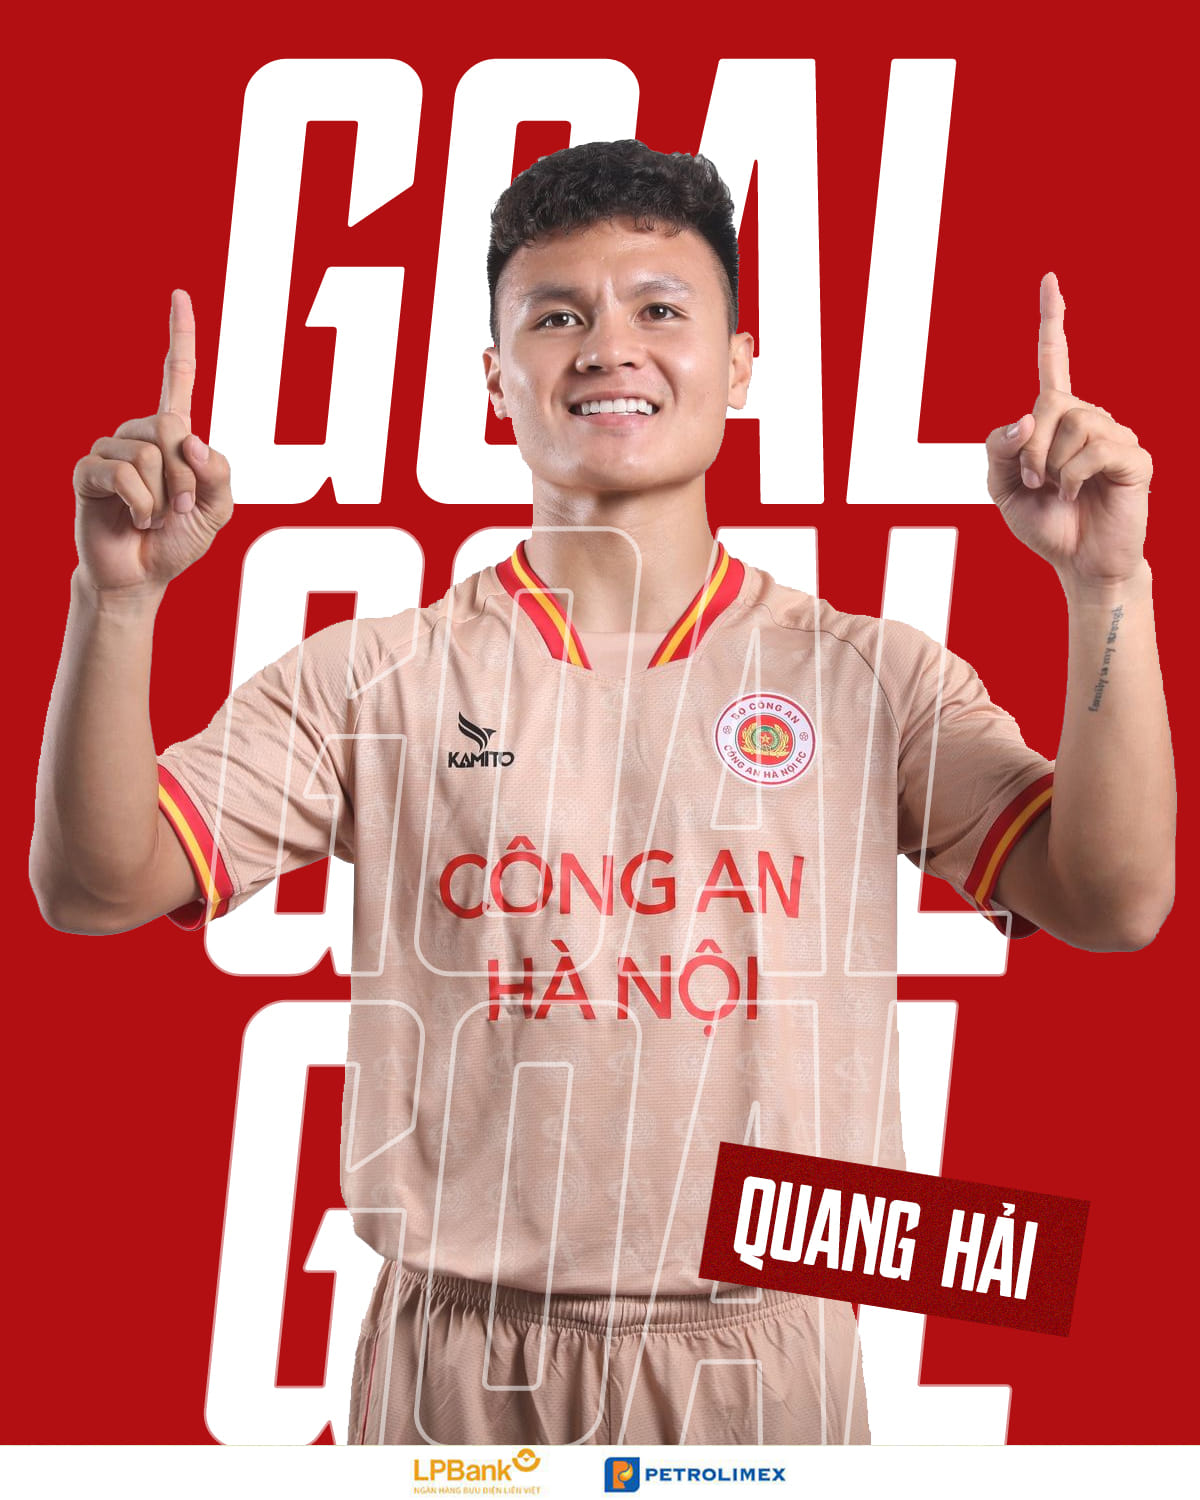 Tiền vệ Quang Hải có bàn thắng đầu tiên trong màu áo đội Công an Hà Nội. Ảnh: CAHN FC